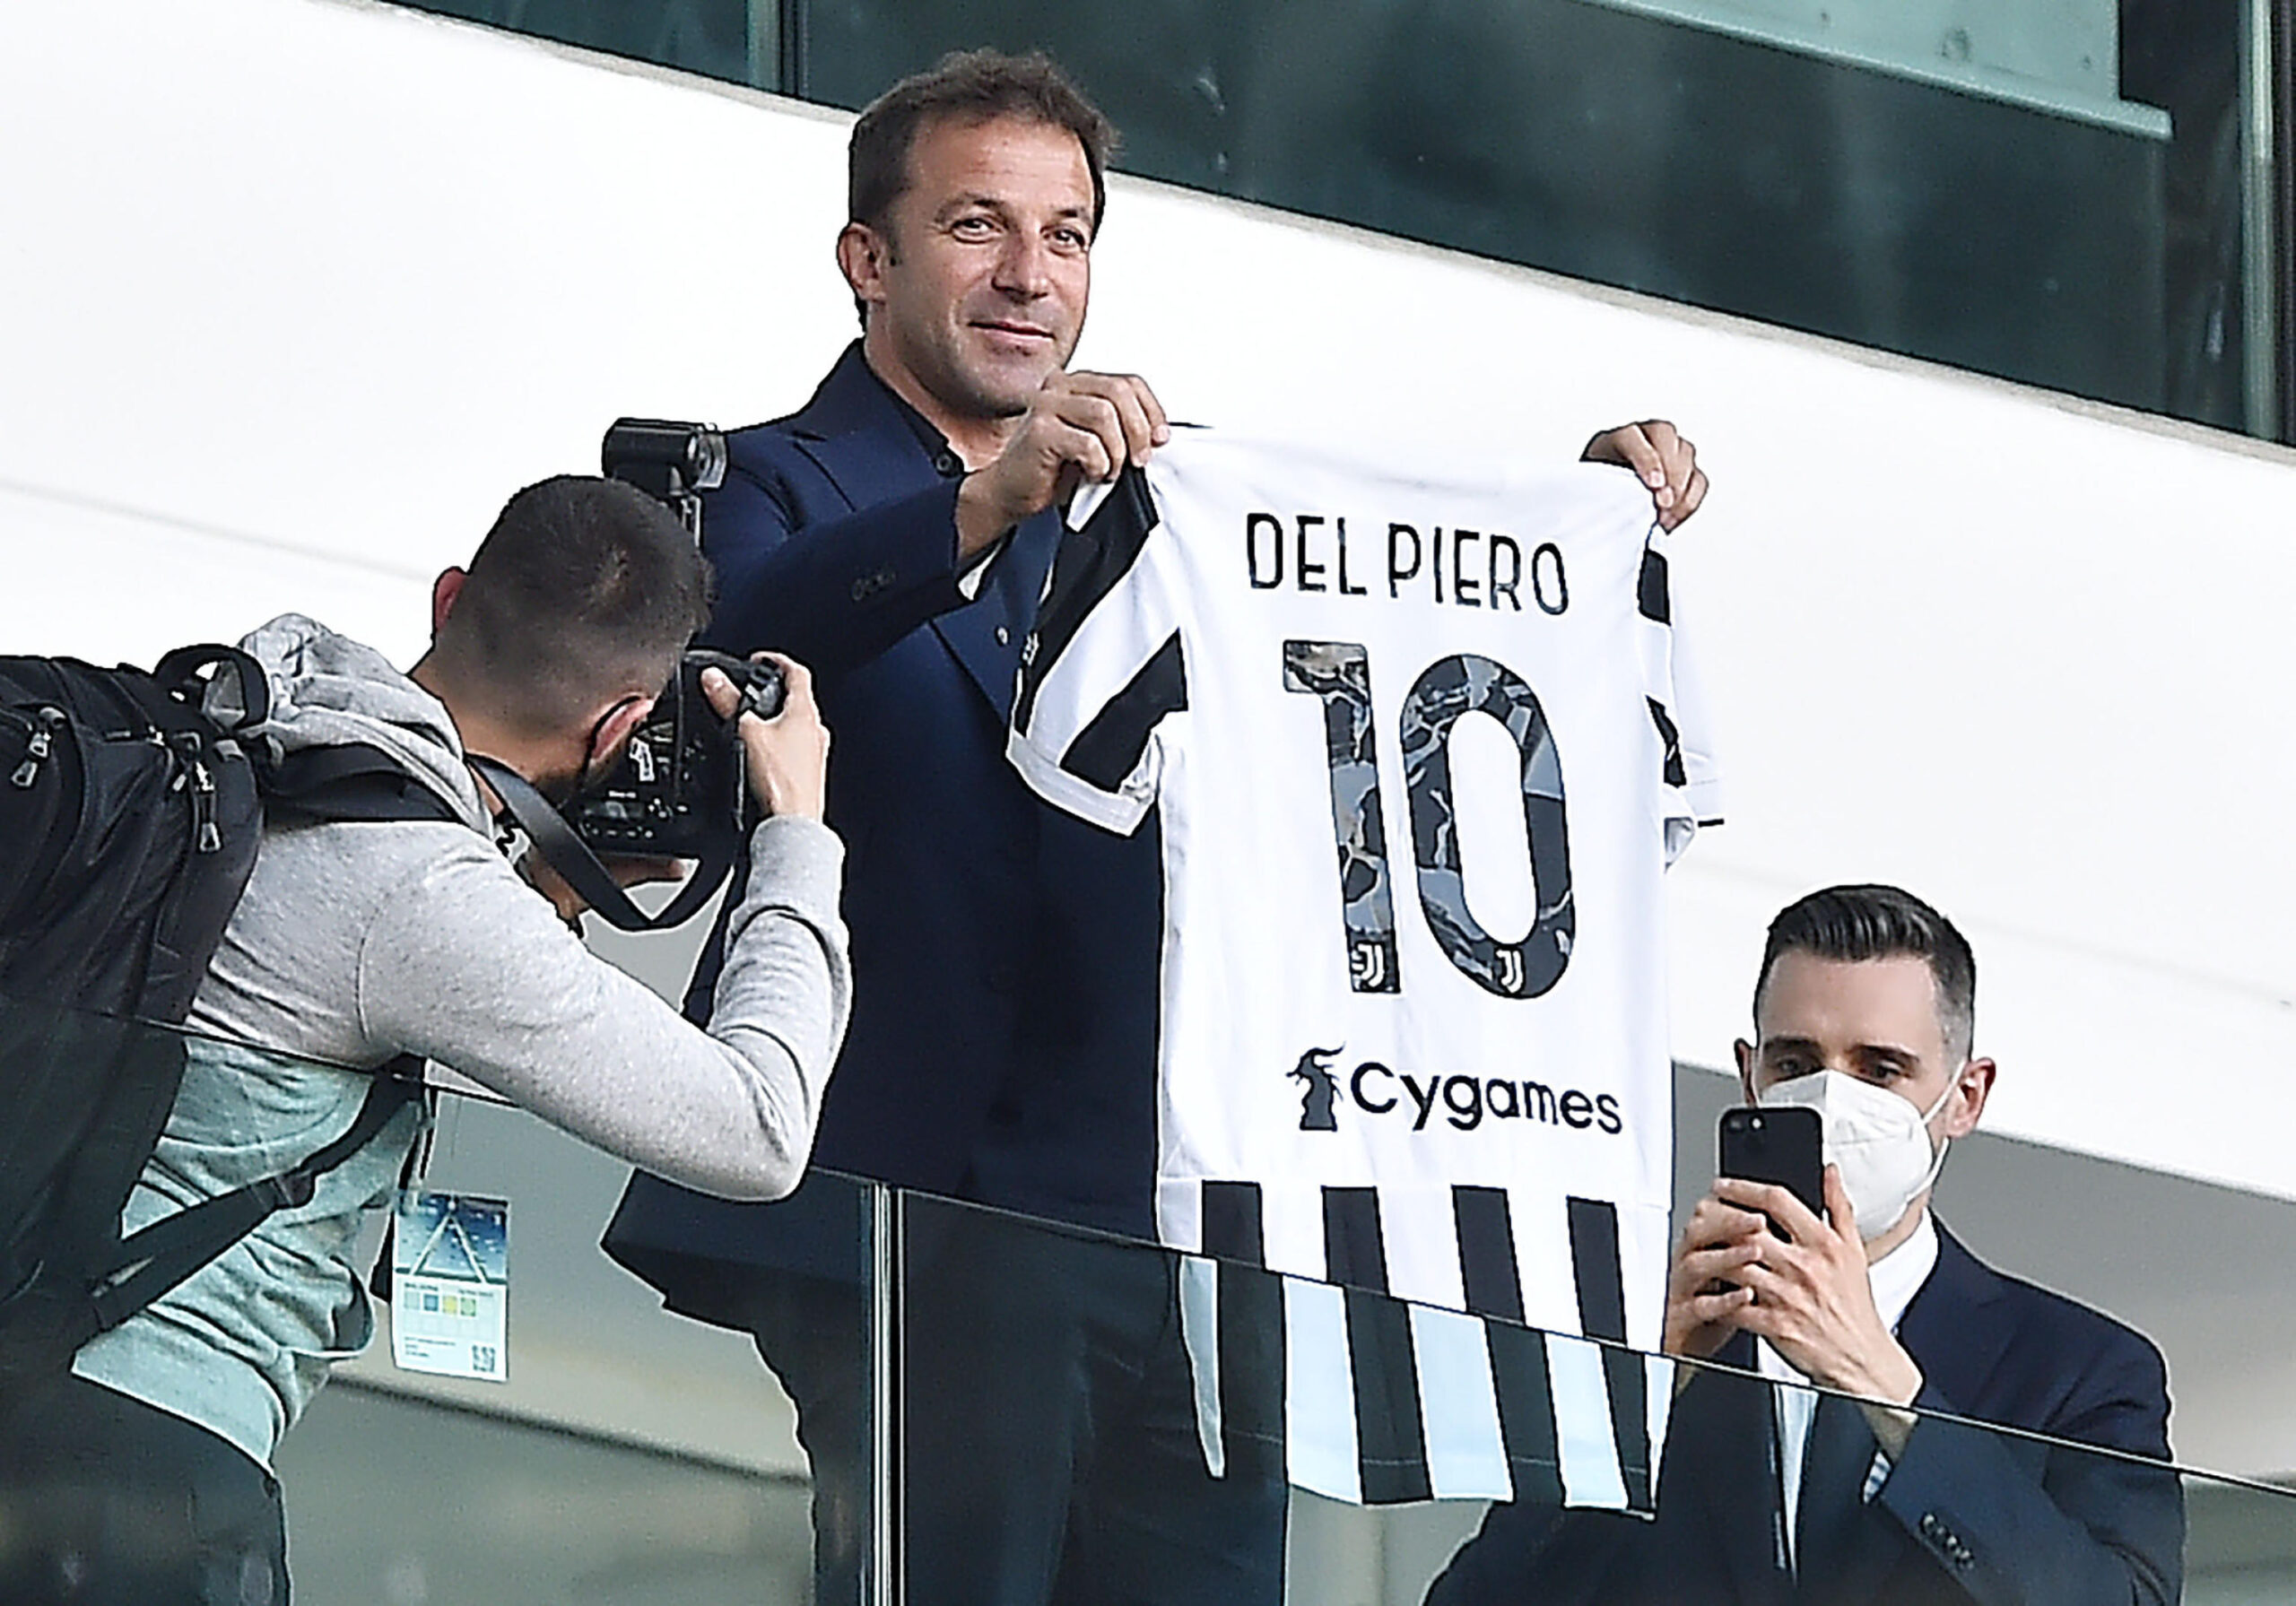 Juventus, Del Piero e l’ipotesi di un ruolo nel club: «Nessuno mi ha chiamato per tornare ma ho ancora casa a Torino»